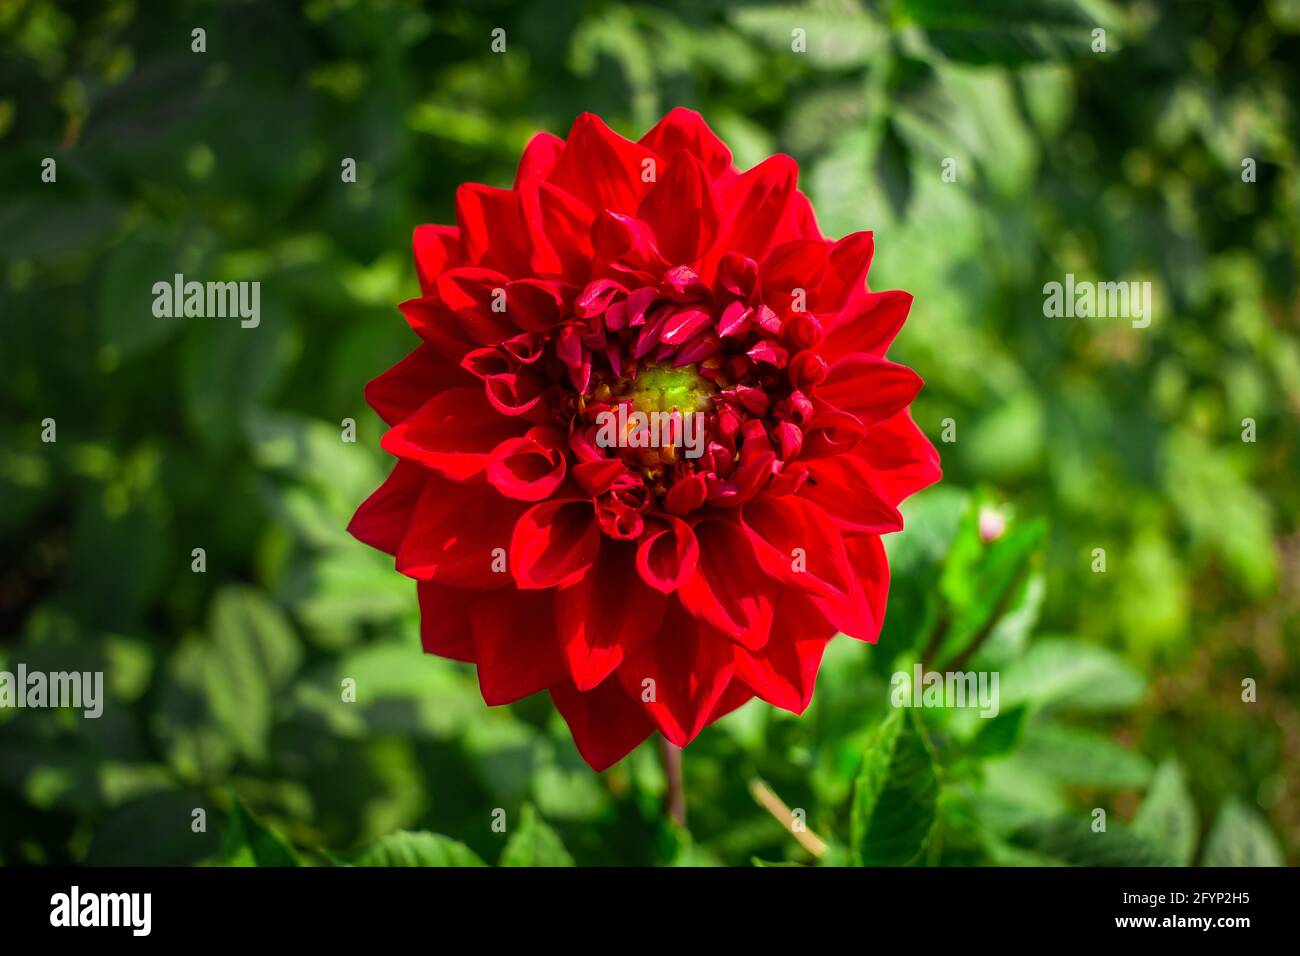 Dahlia Flower image J'ai pris cette image le 5 février 2019 à Sonargaon, Bangladesh, Asie du Sud Banque D'Images